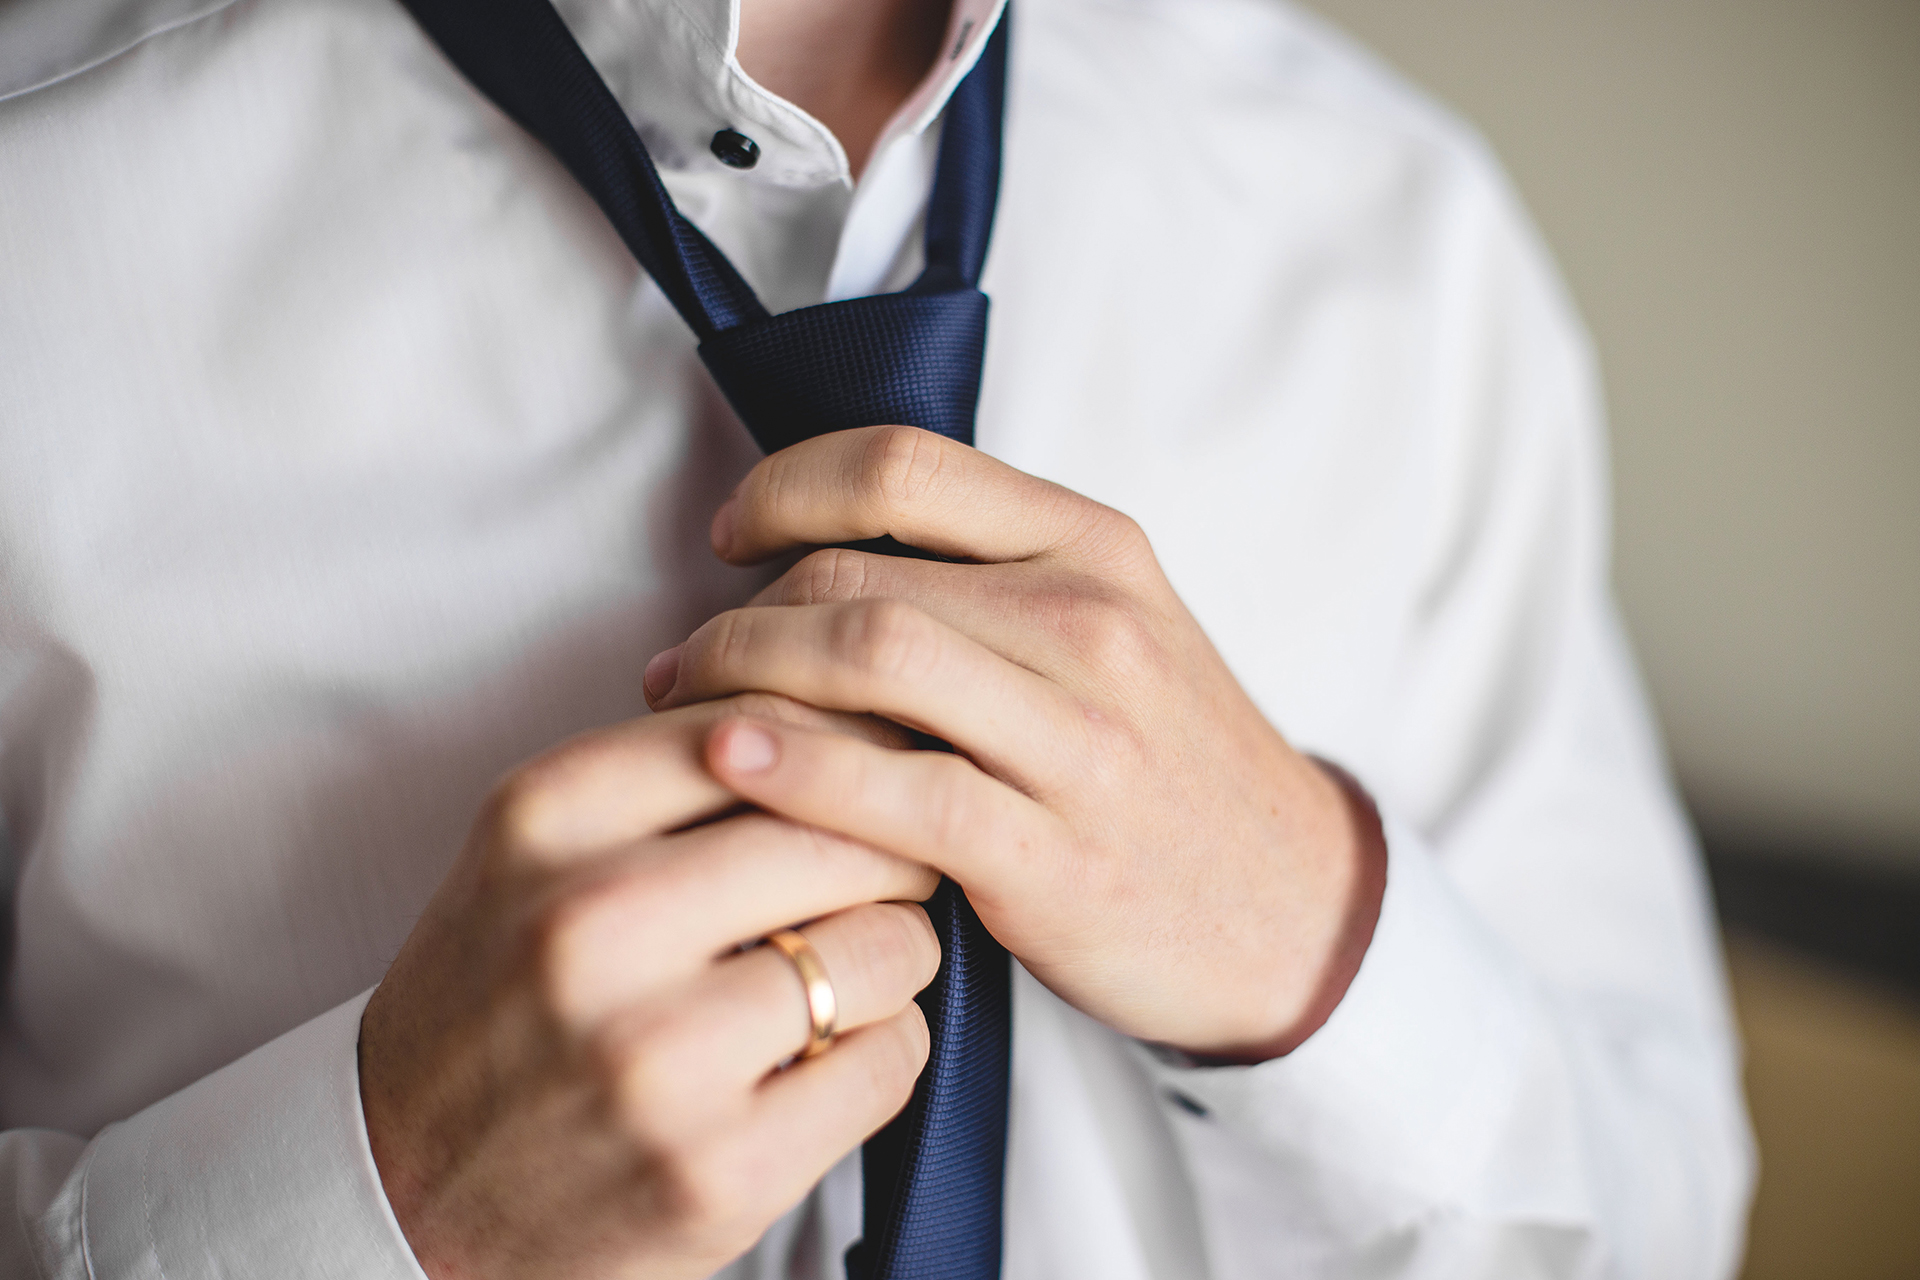 8 Different ways to tie a necktie . How to tie a tie 